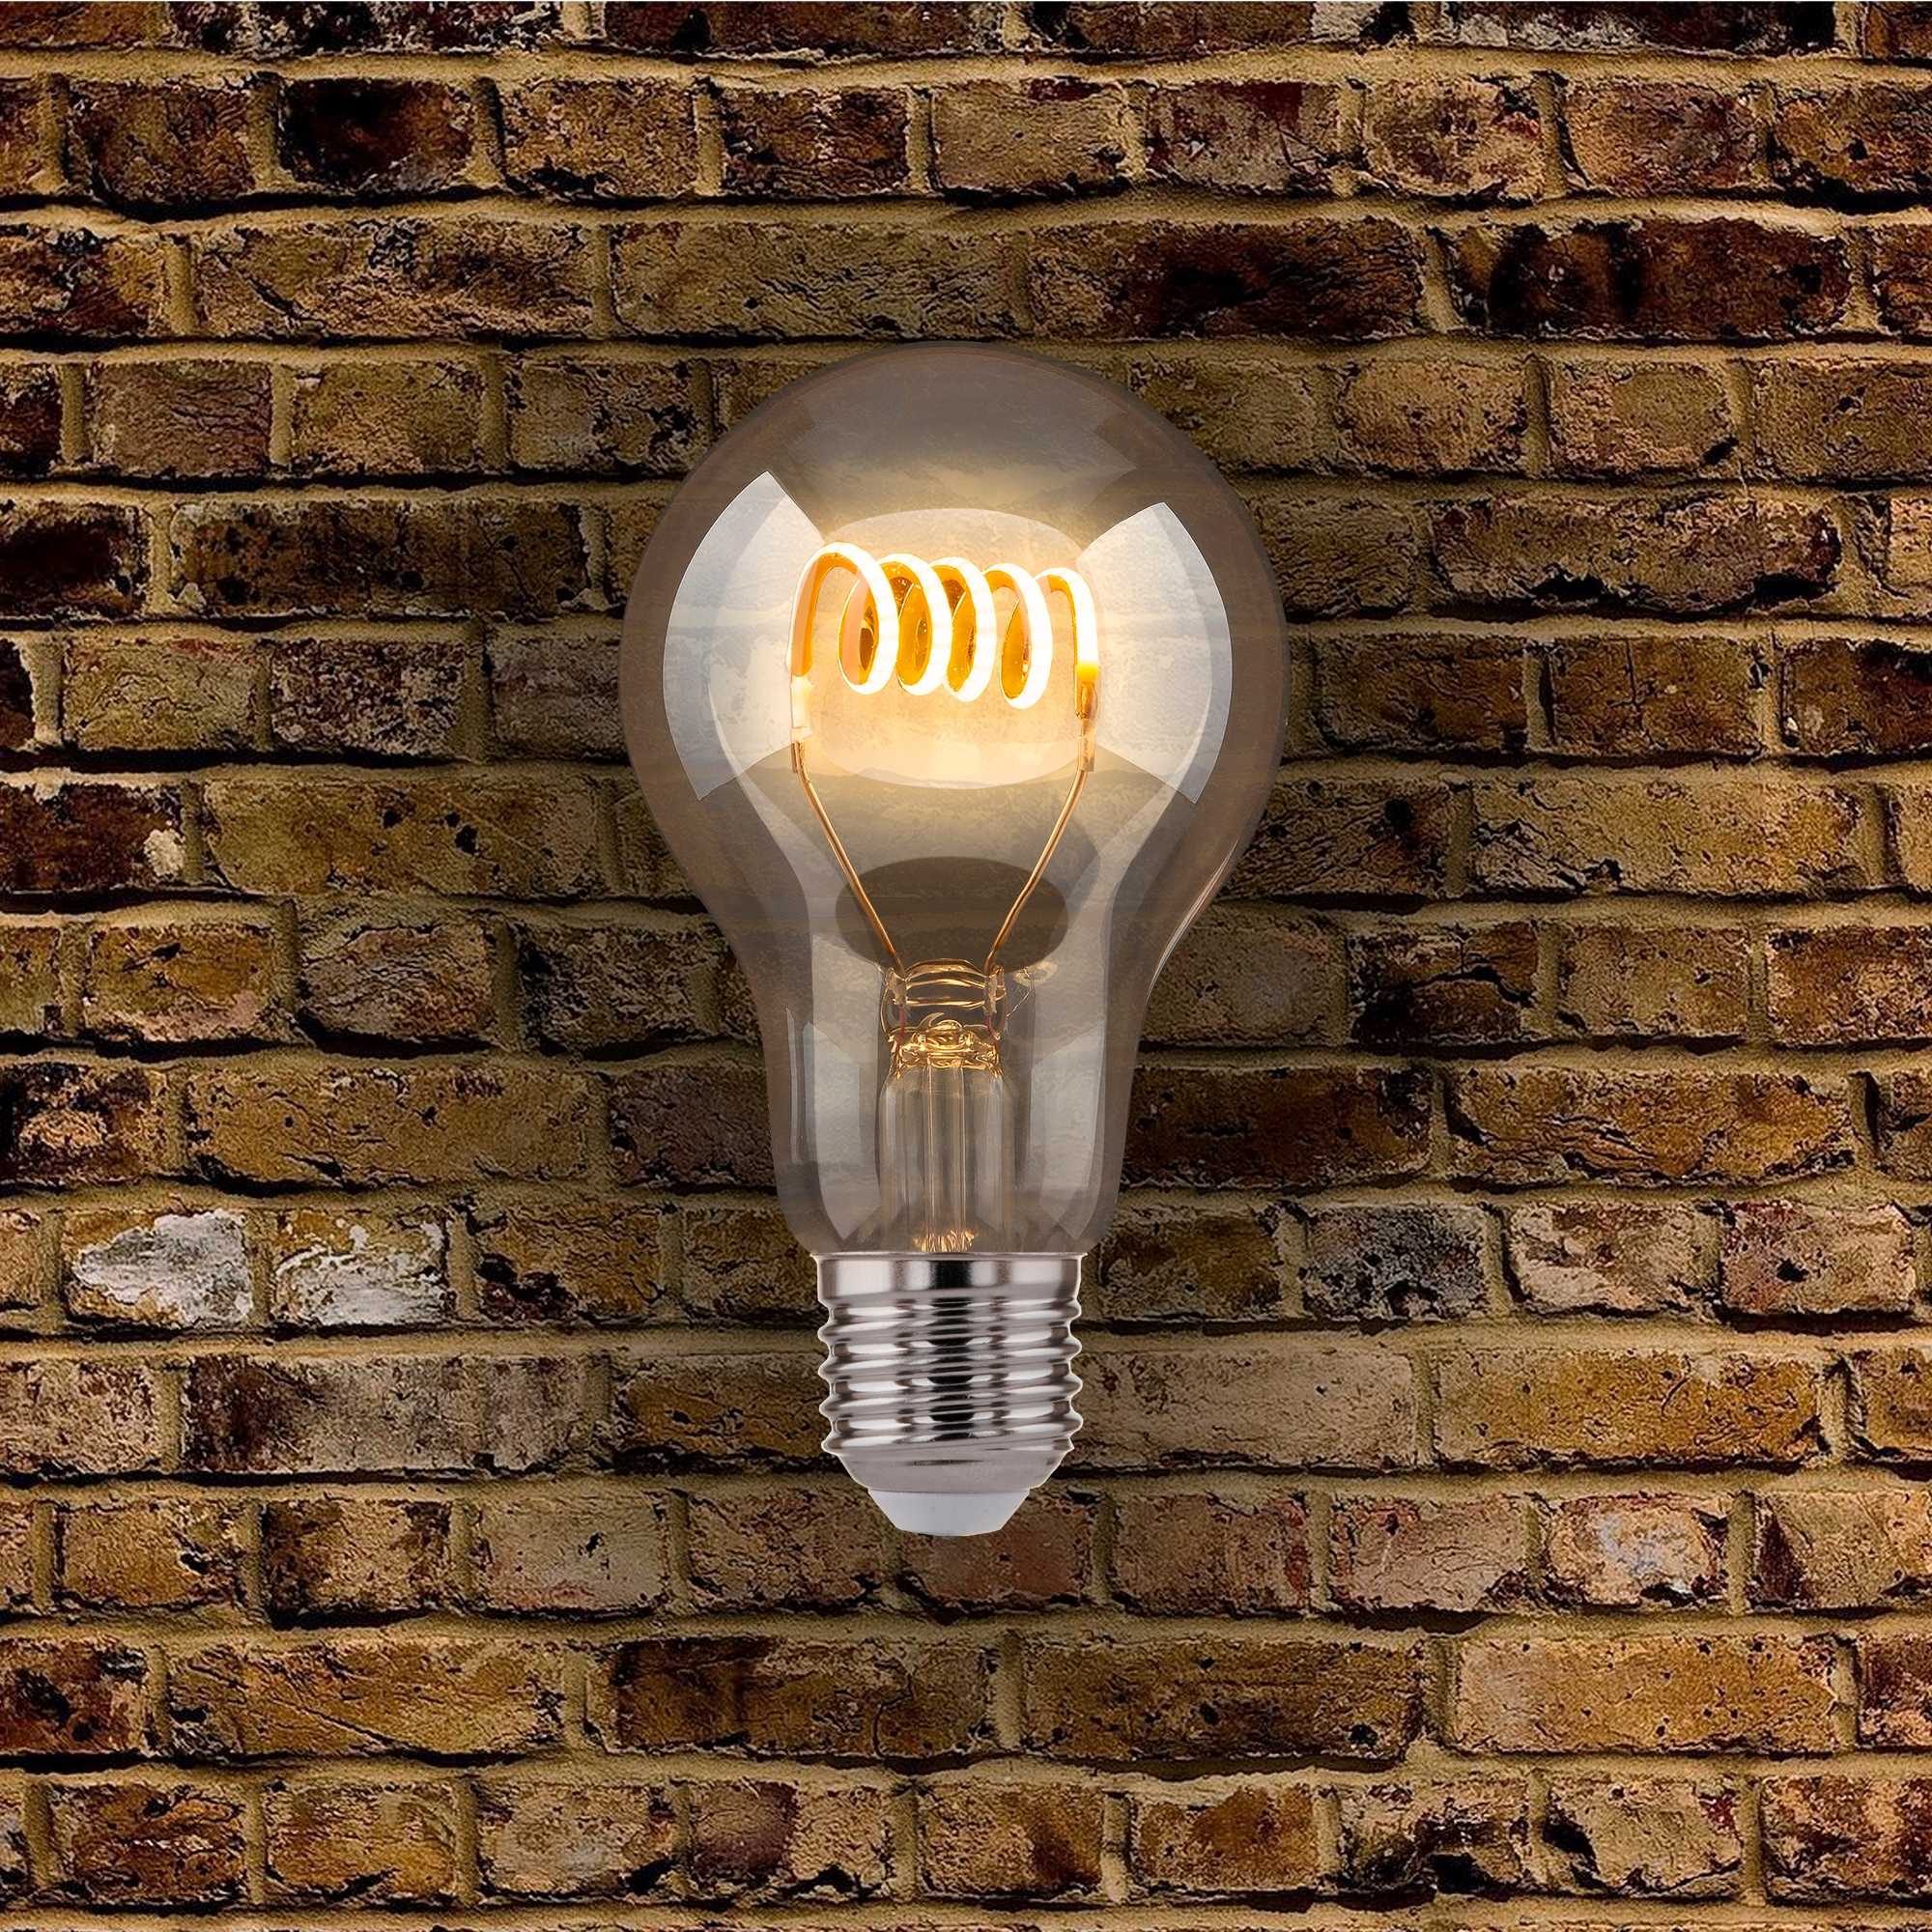 Как выбрать светодиодные лампы для дома: это нужно знать всем!